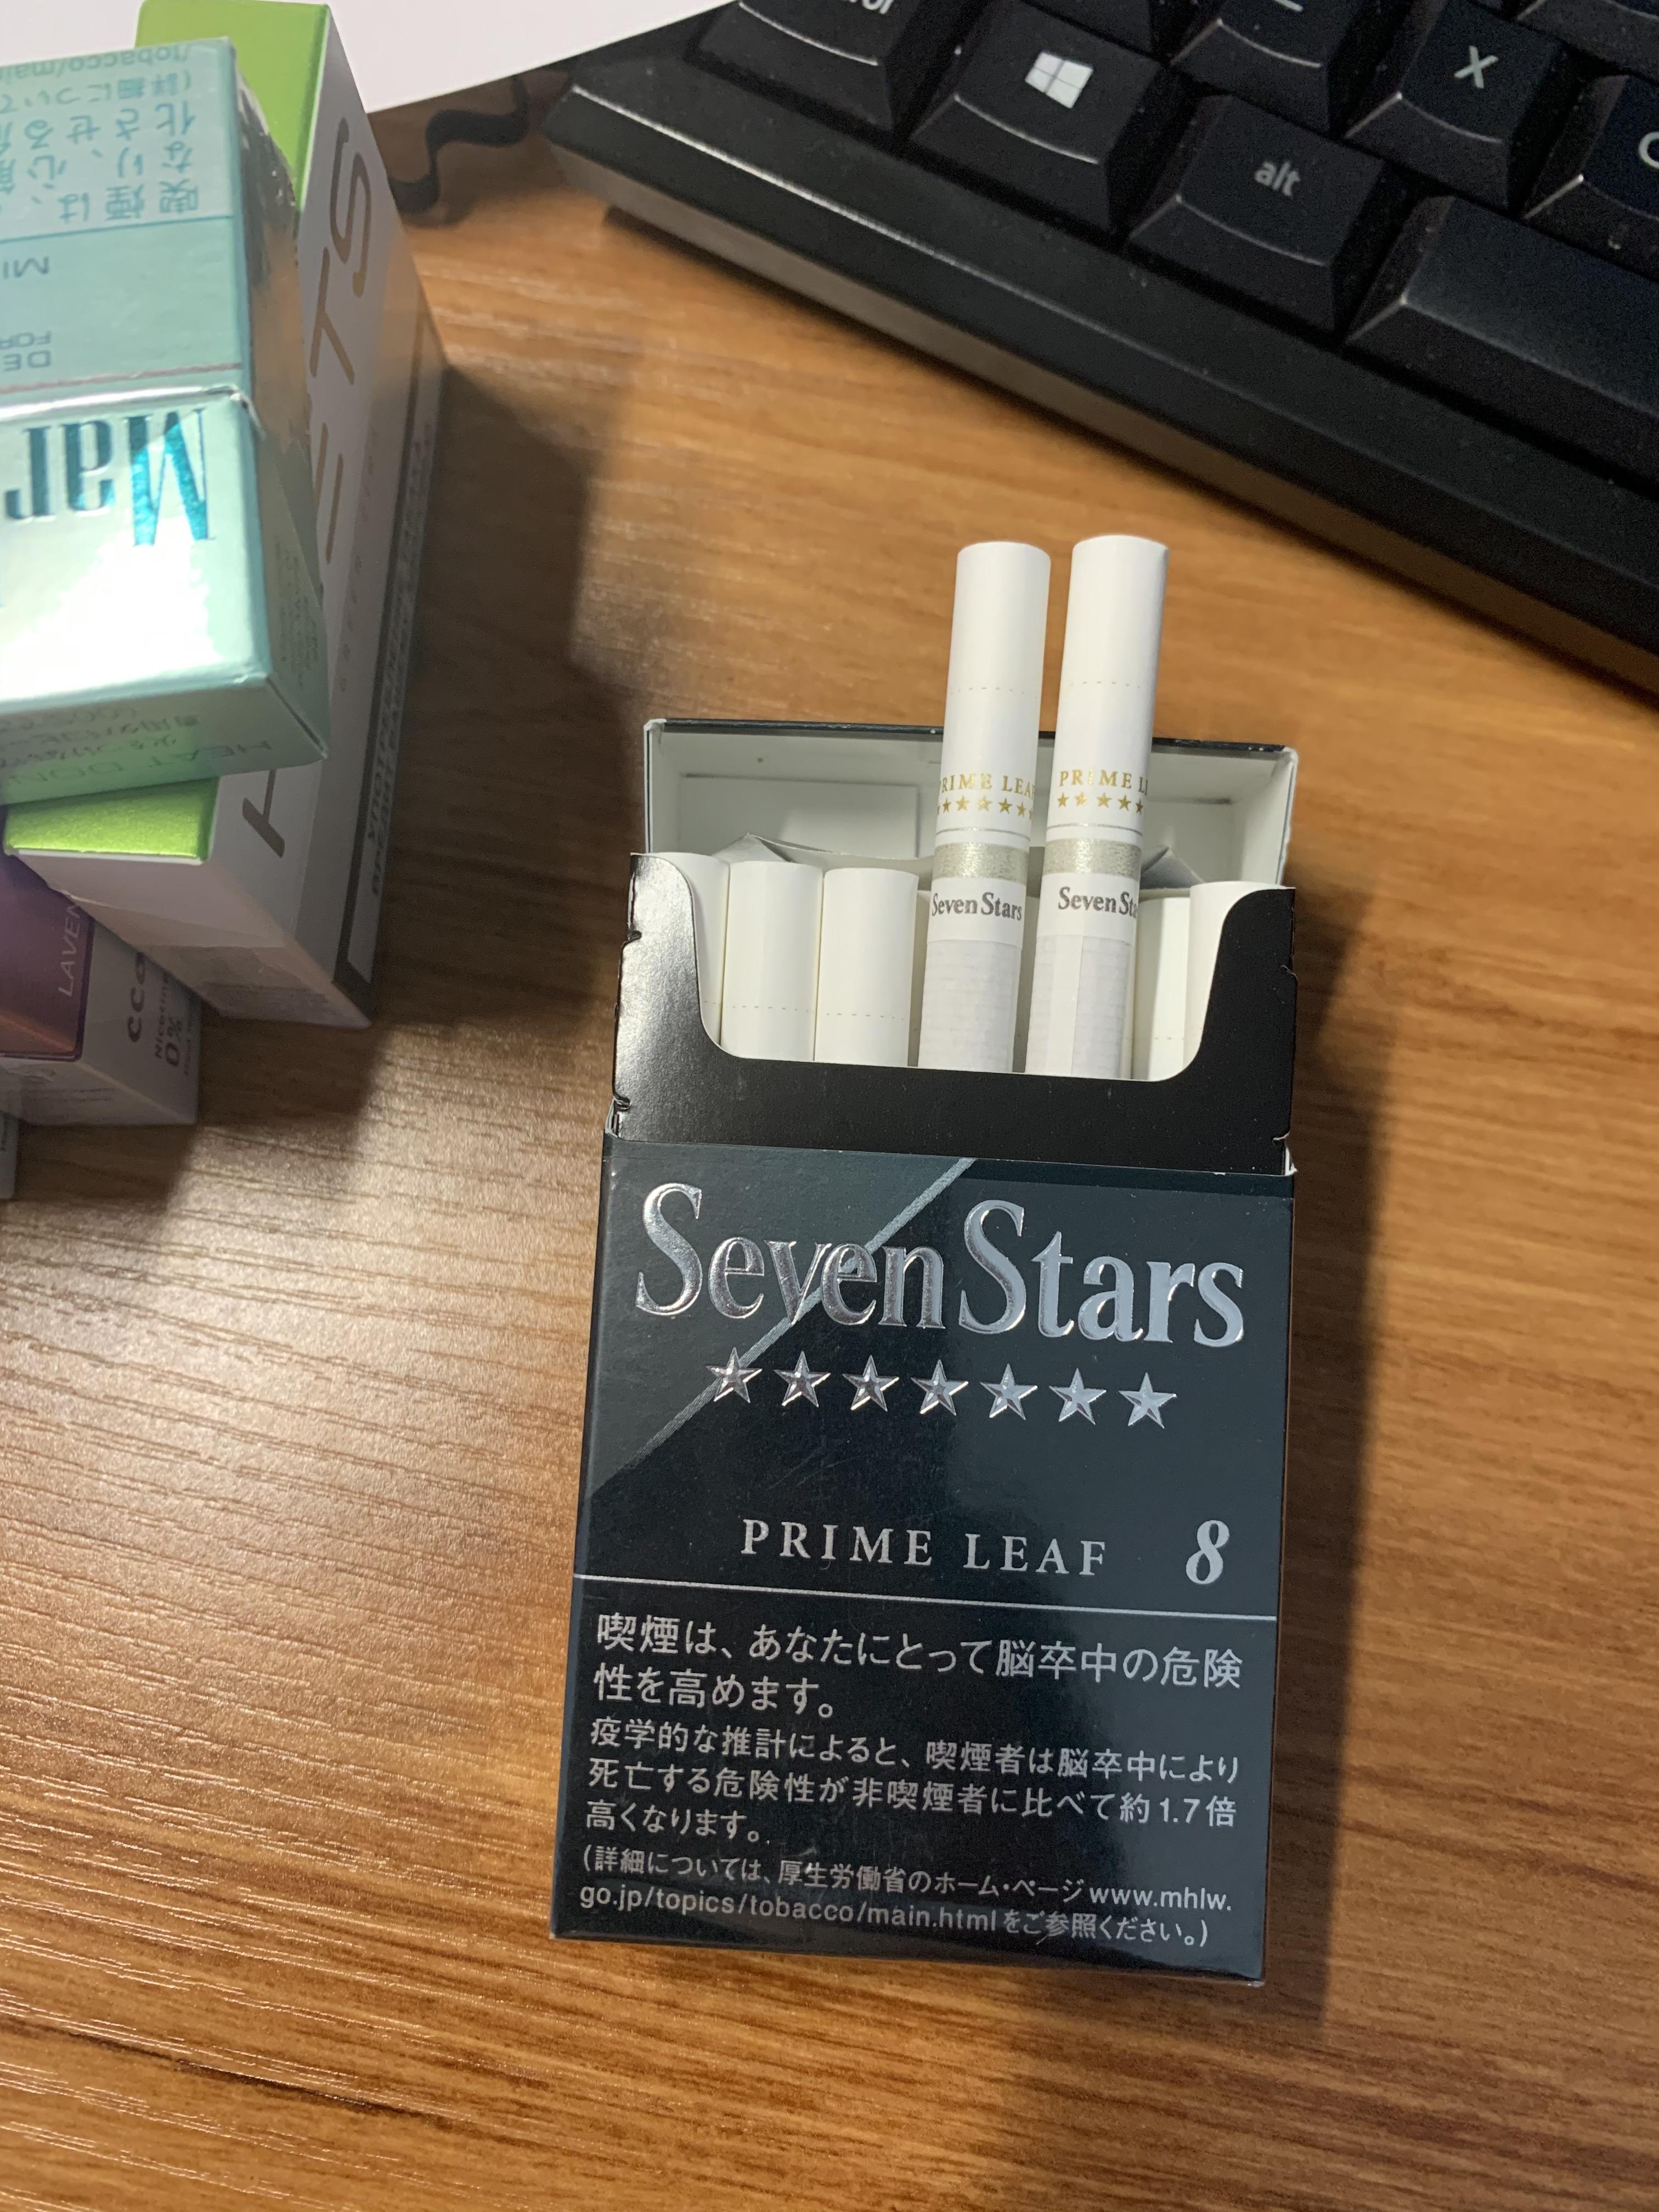 日本七星烟怎么样? 